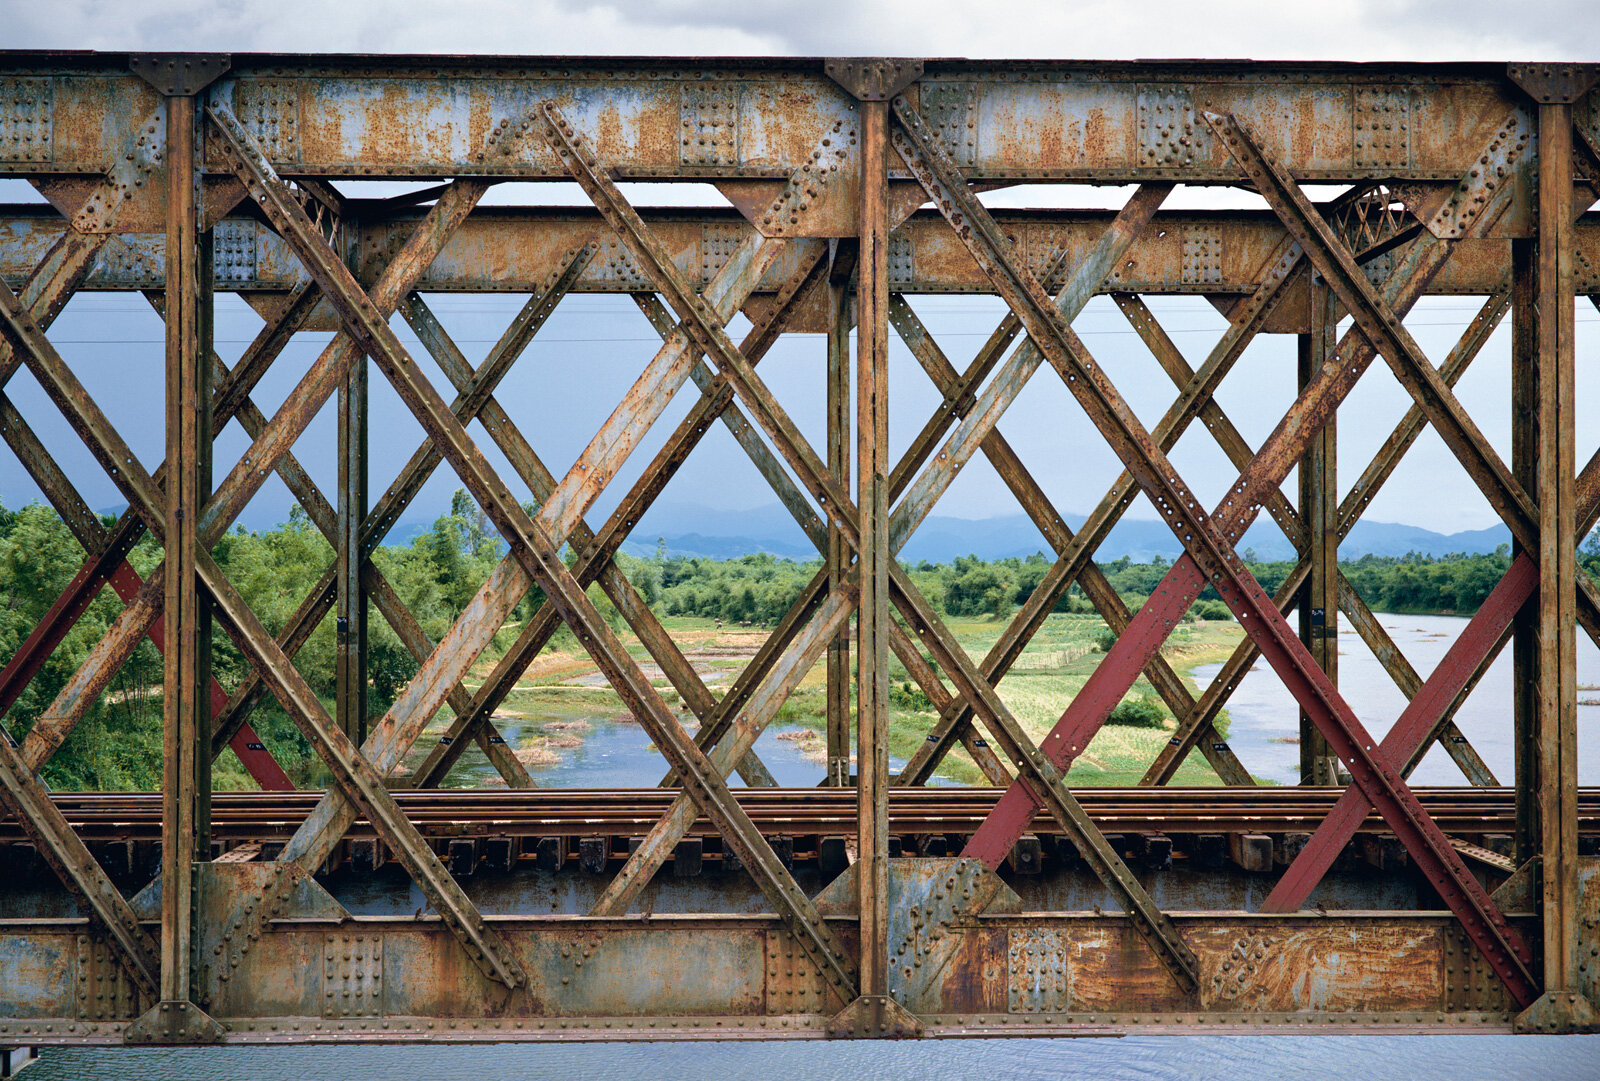  Railroad Bridge, Quang Tri Vietnam 1995 